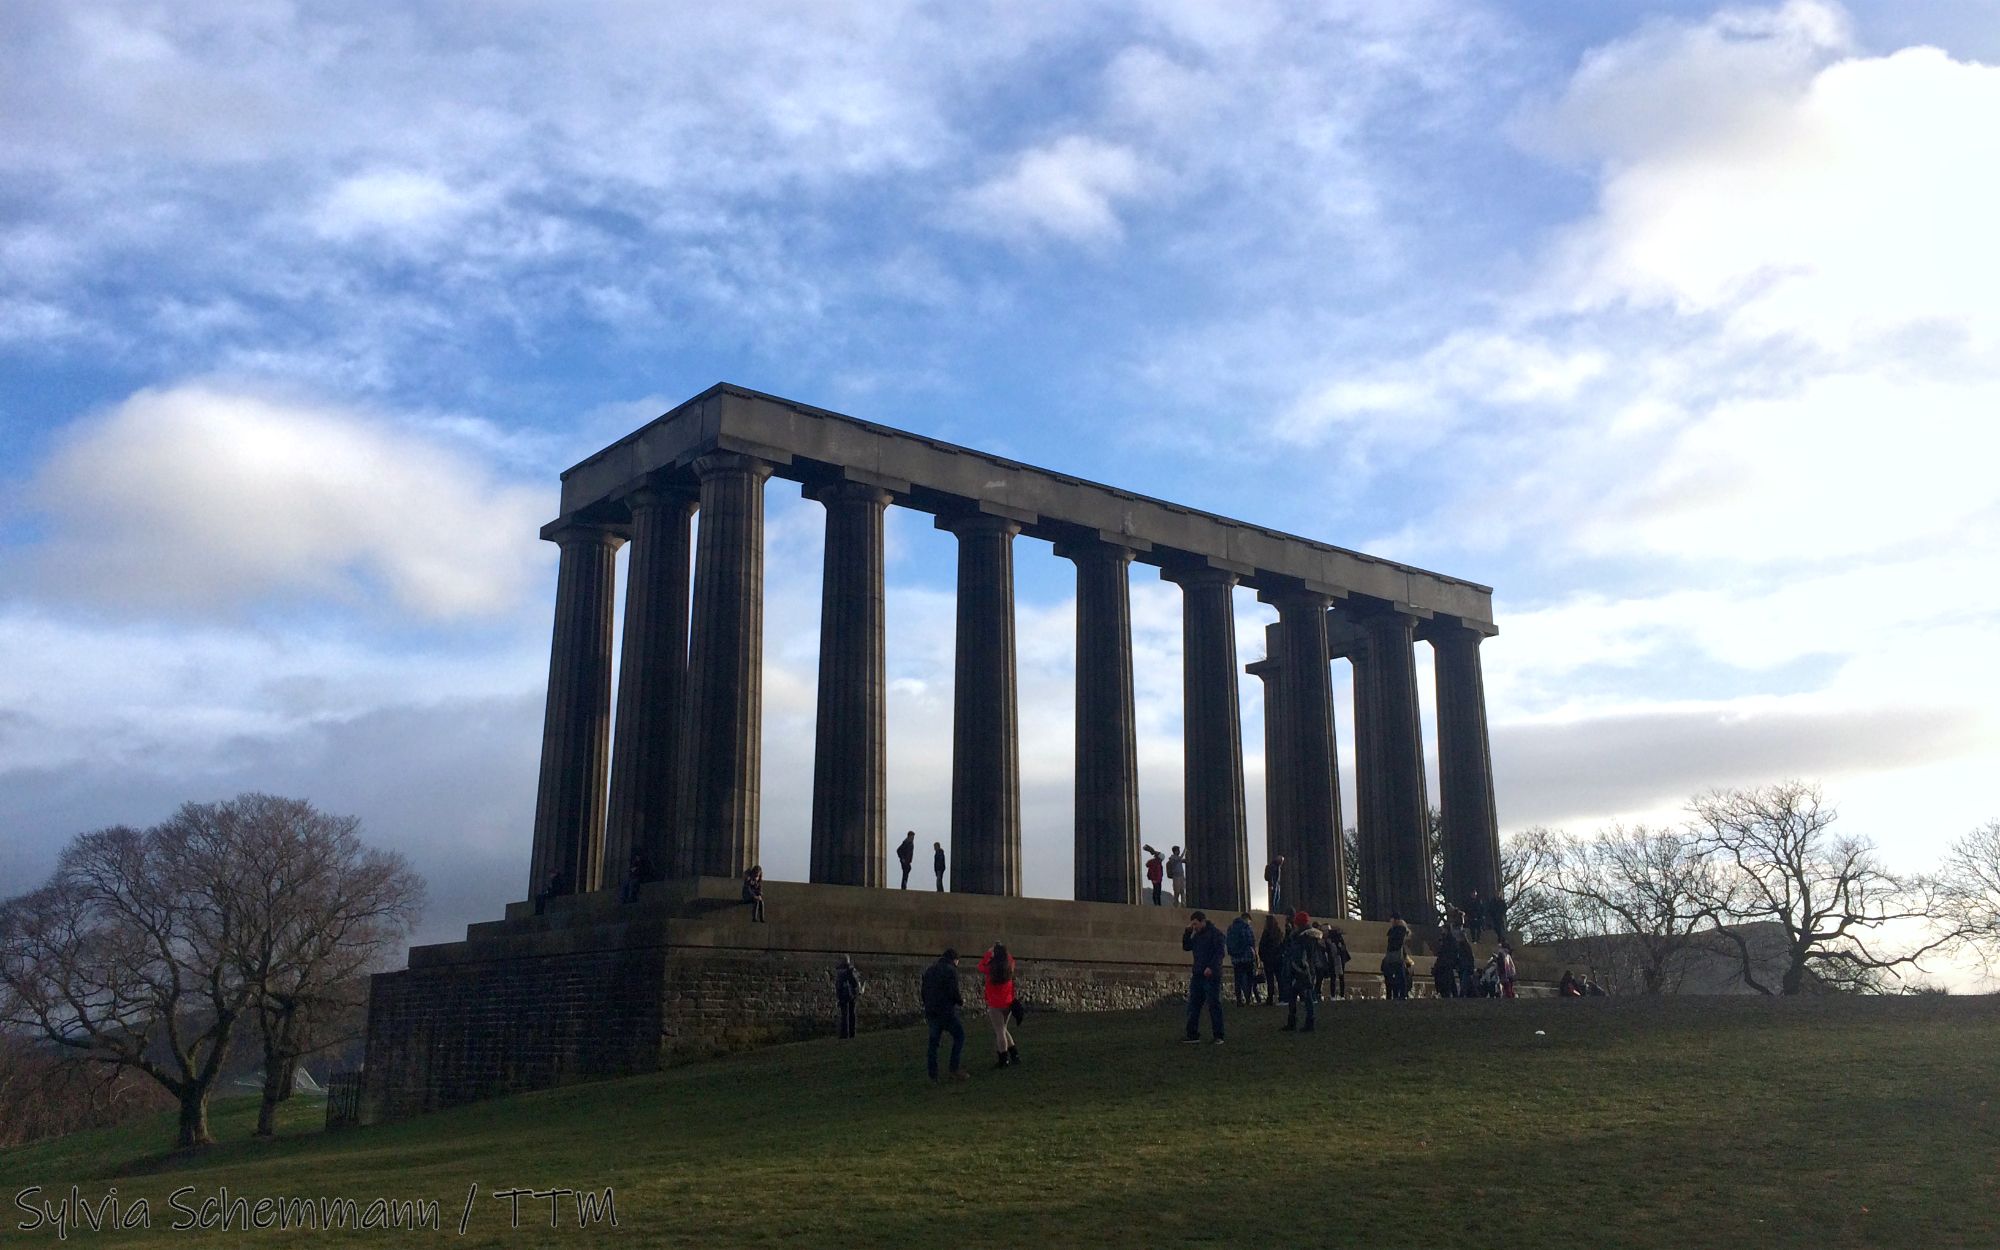 Edinburgh Sehenswürdigkeiten Geschichte